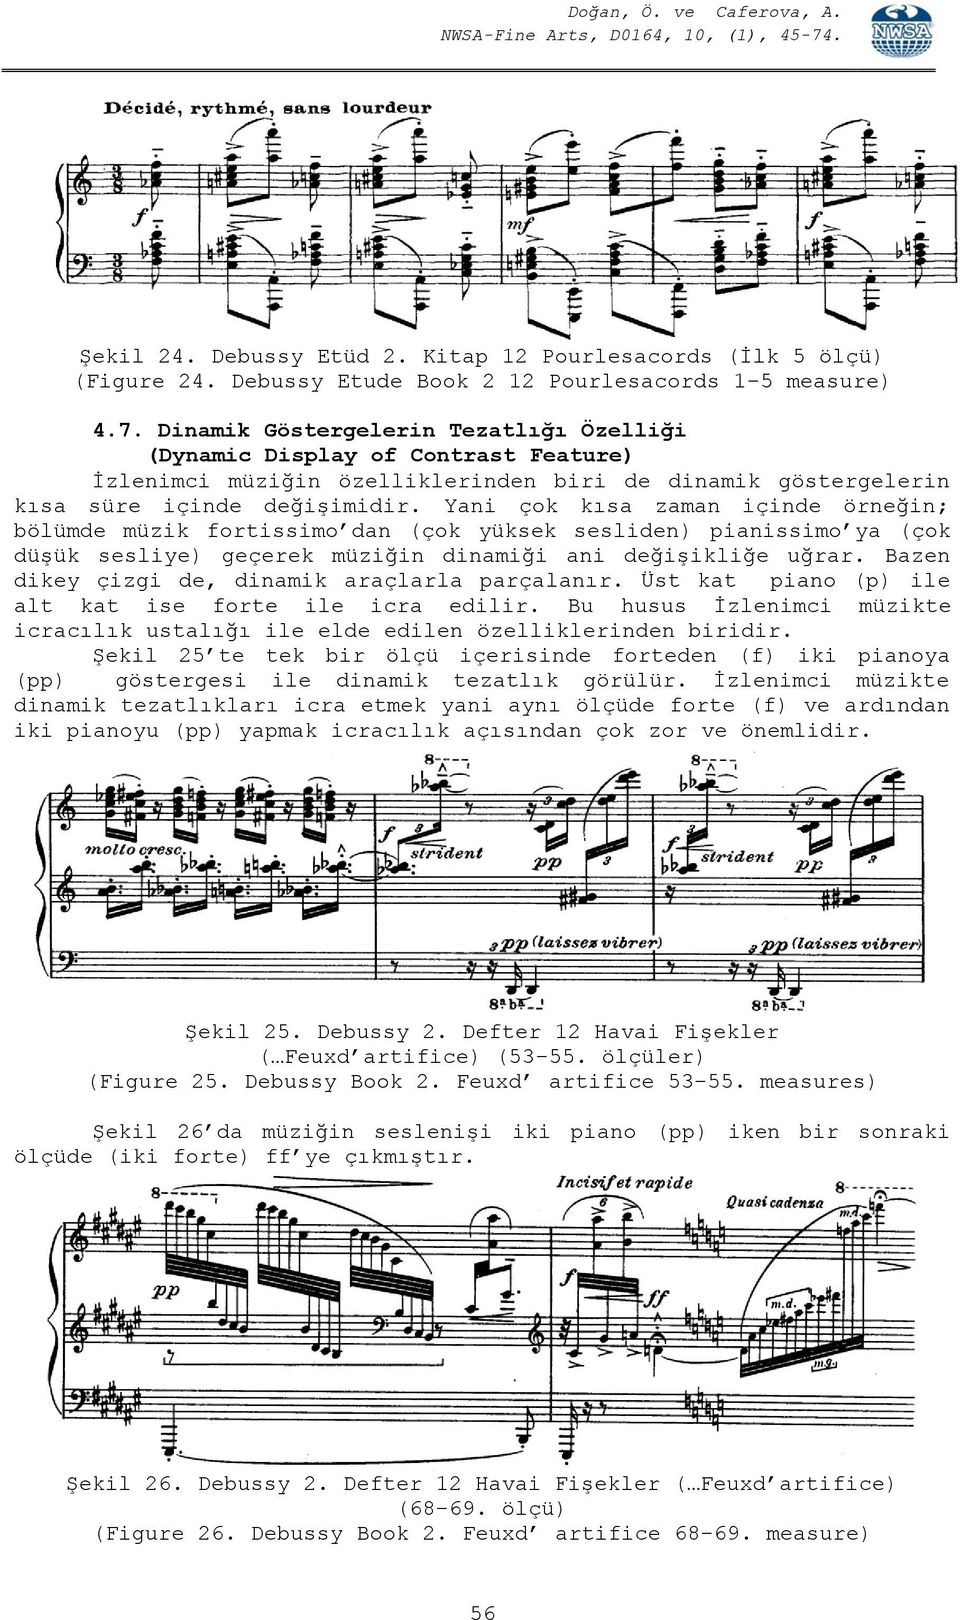 Yani çok kısa zaman içinde örneğin; bölümde müzik fortissimo dan (çok yüksek sesliden) pianissimo ya (çok düşük sesliye) geçerek müziğin dinamiği ani değişikliğe uğrar.